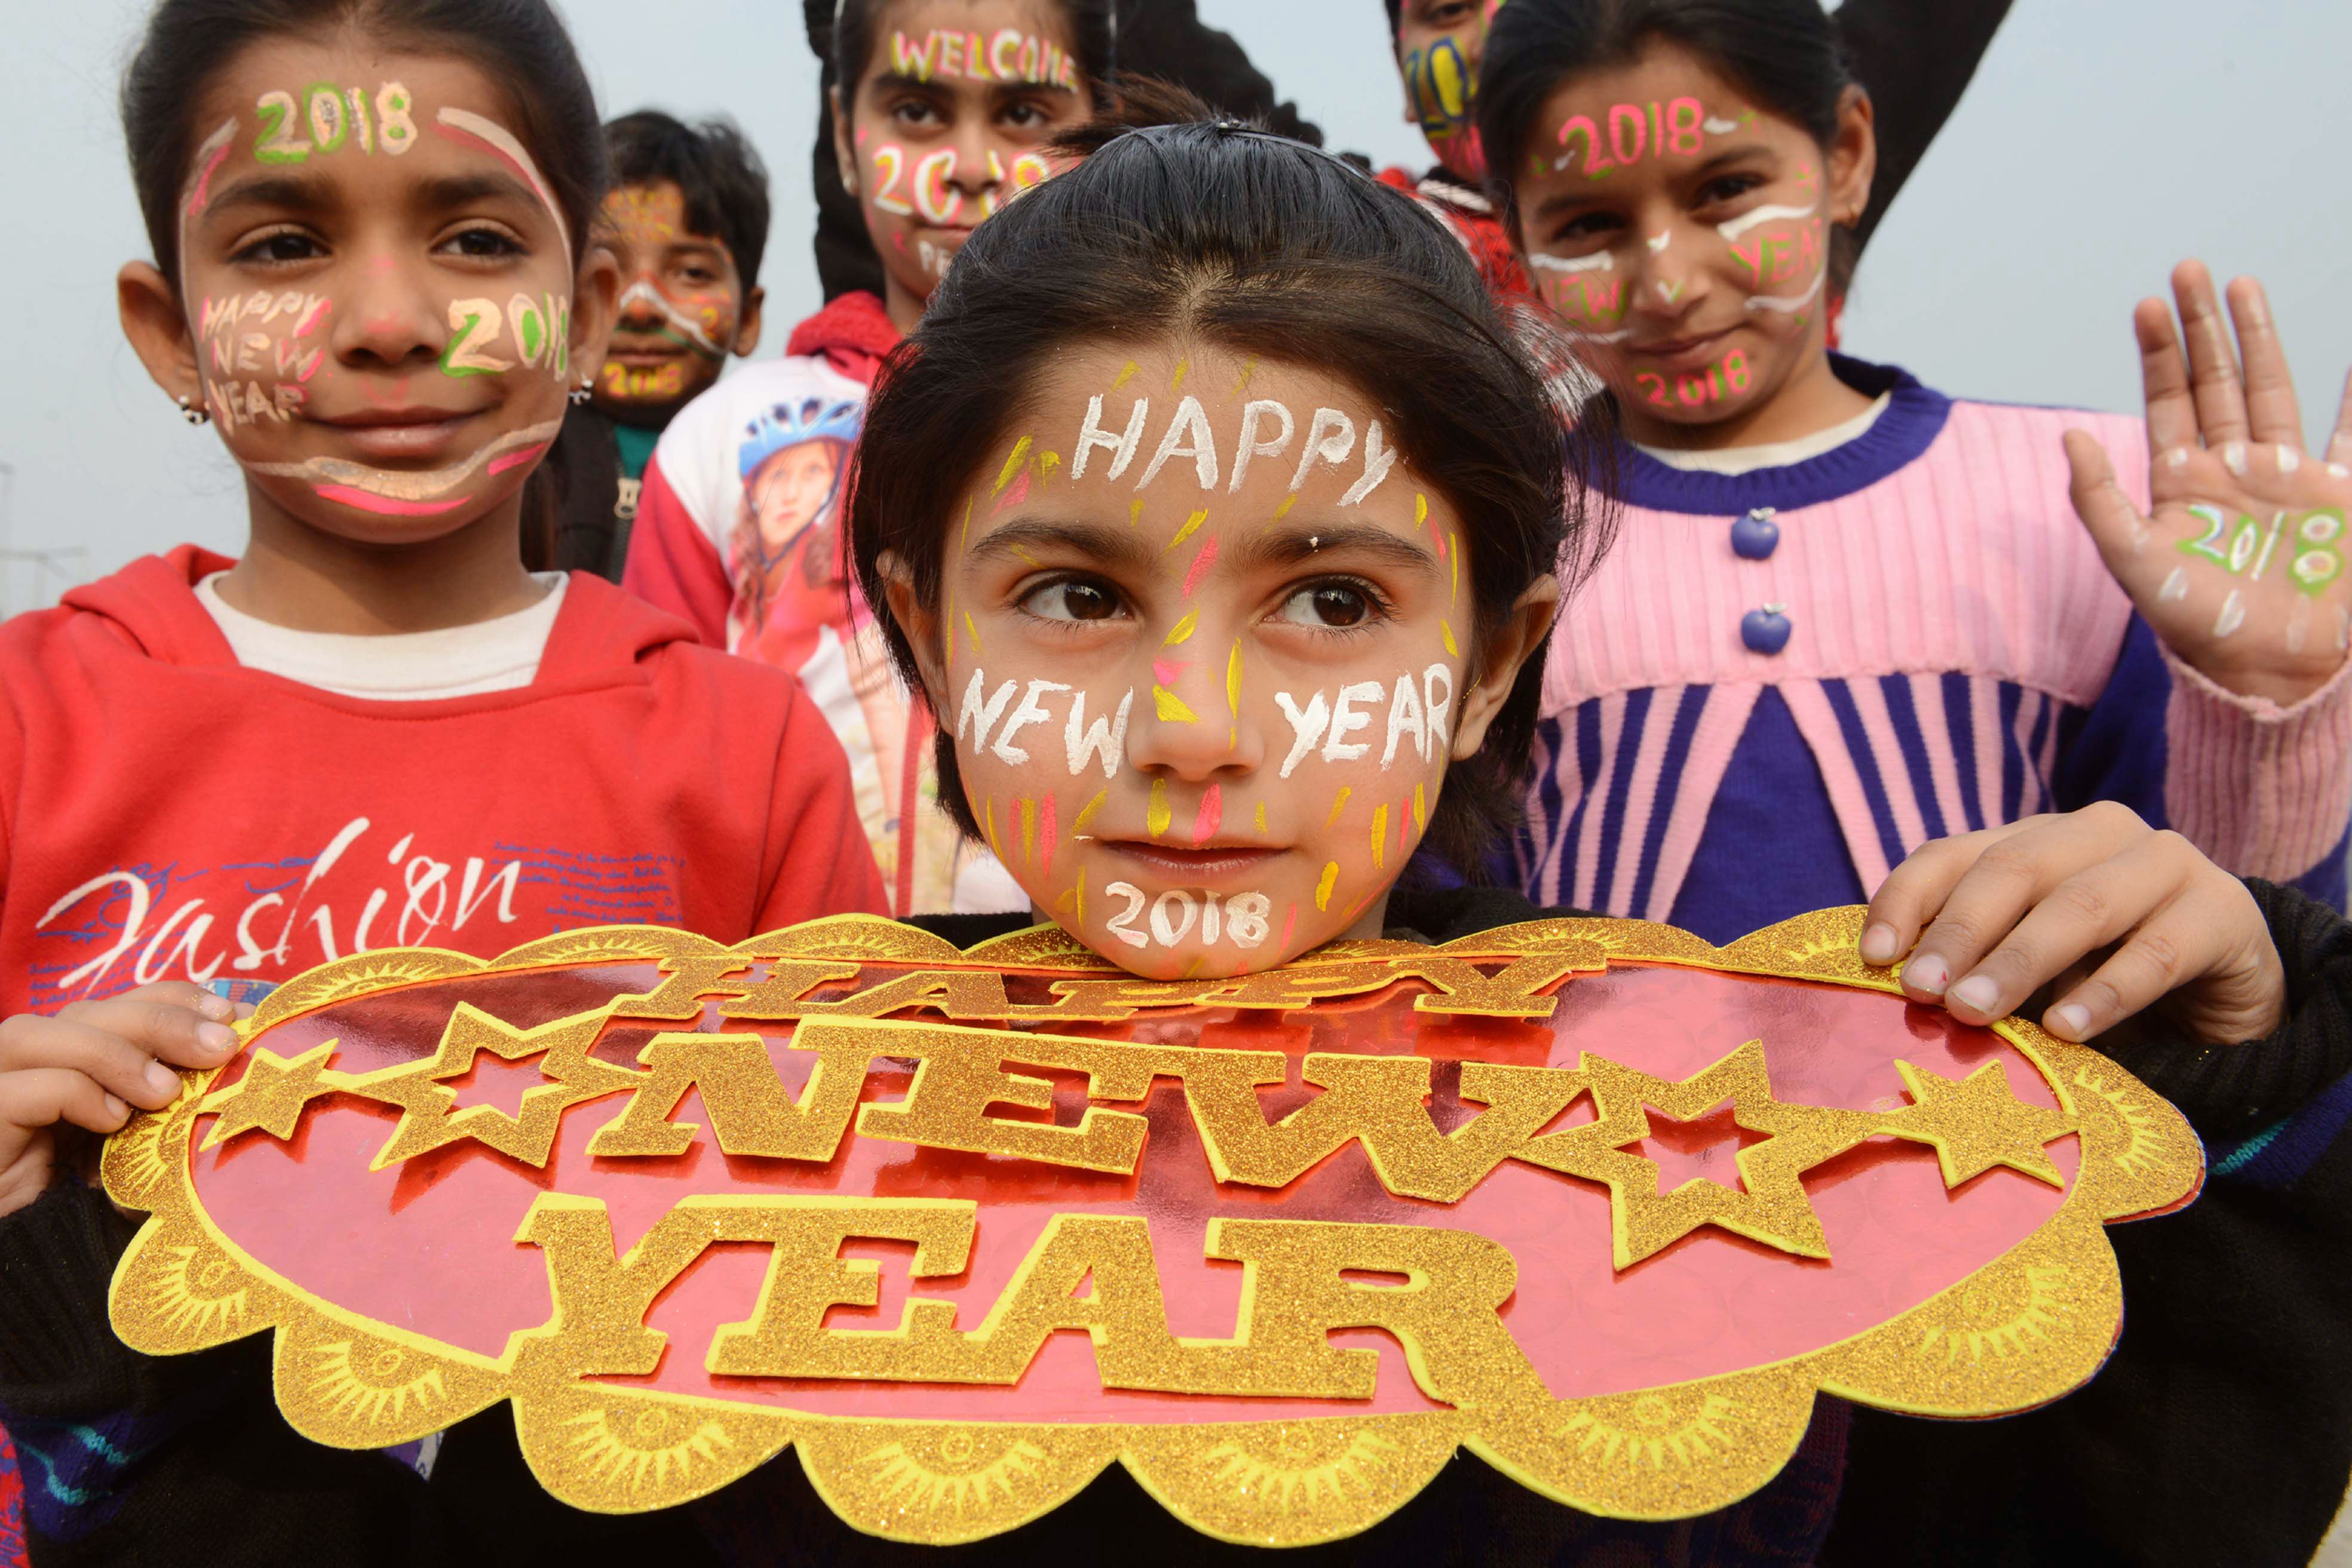 أطفال يحتفلون بالعام الجديد فى الهند